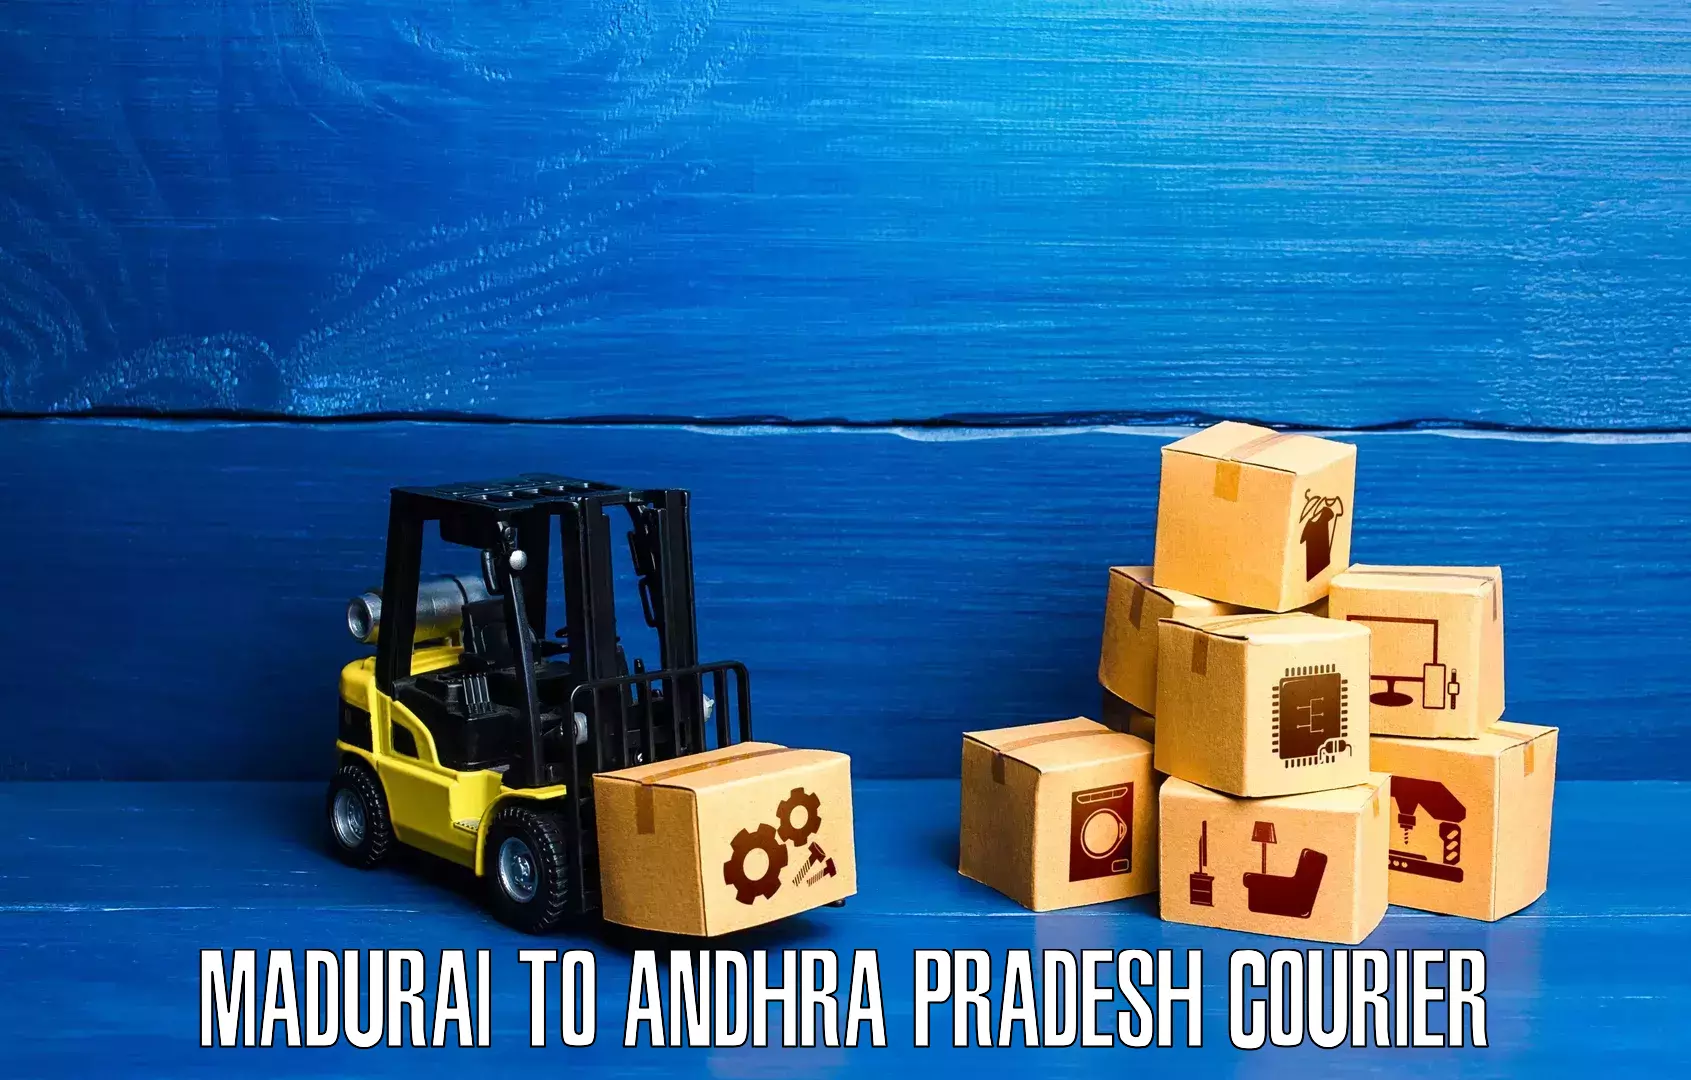 Overnight delivery Madurai to Etcherla